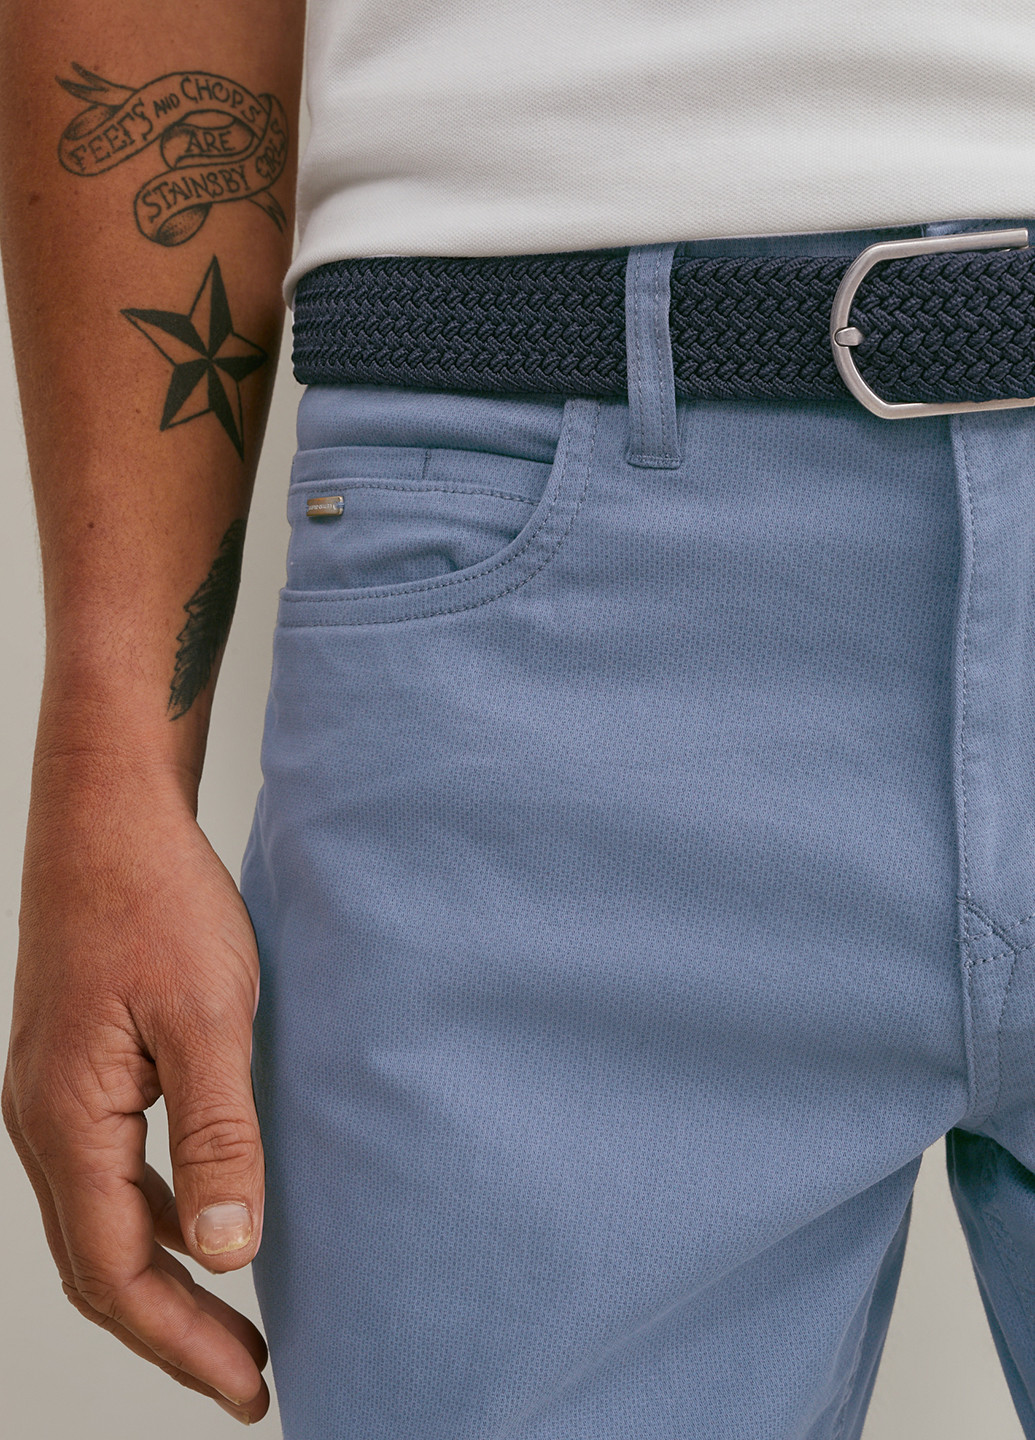 Голубые кэжуал демисезонные прямые брюки C&A